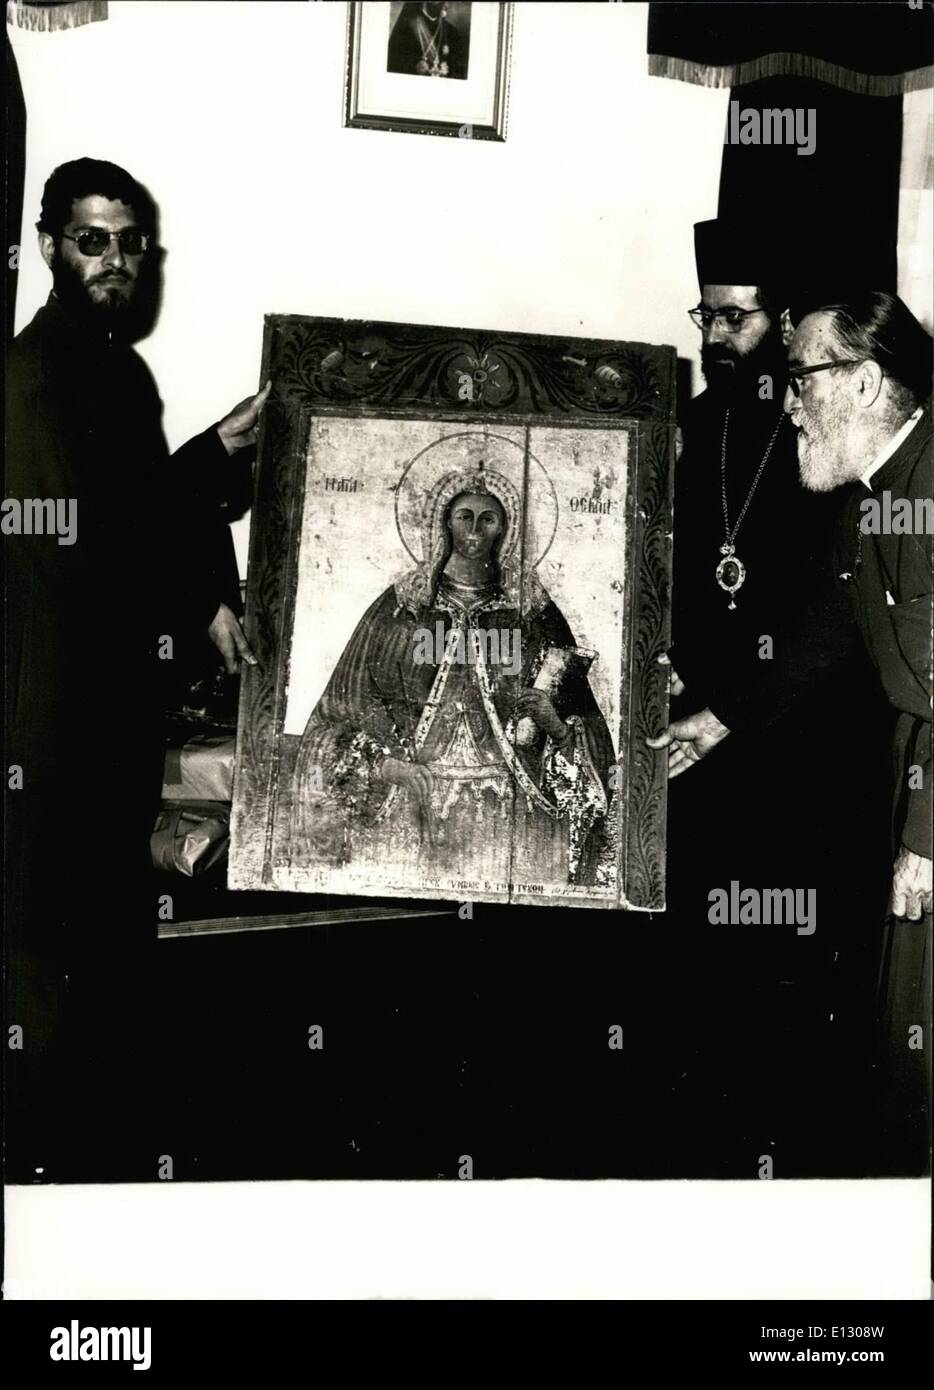 25 février 2012 - L'archevêque Chrysostomos de Kitios droite avec ikons rentré d'Angleterre. Ils ont été volés dans les églises en th Banque D'Images